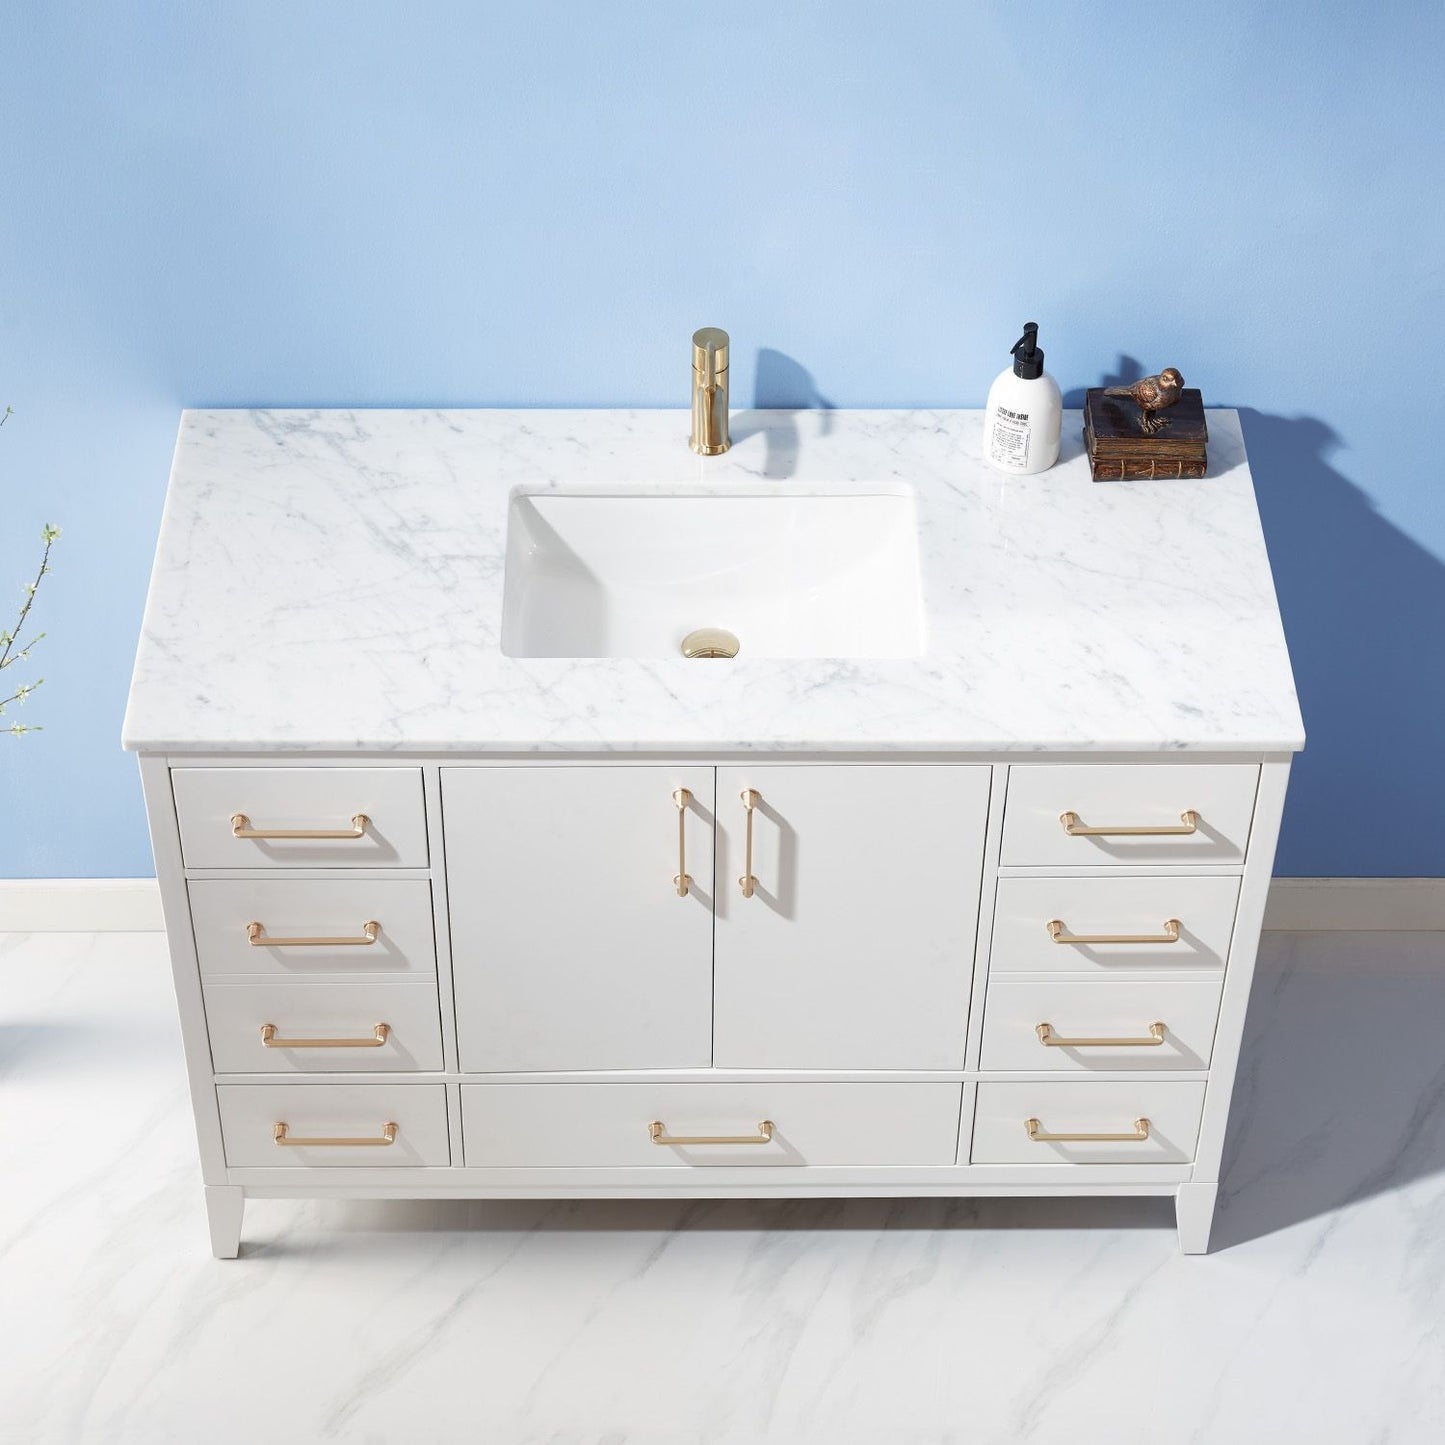 Altair Sutton 48" Single Bathroom Vanity Set Countertop without Mirror - Luxe Bathroom Vanities